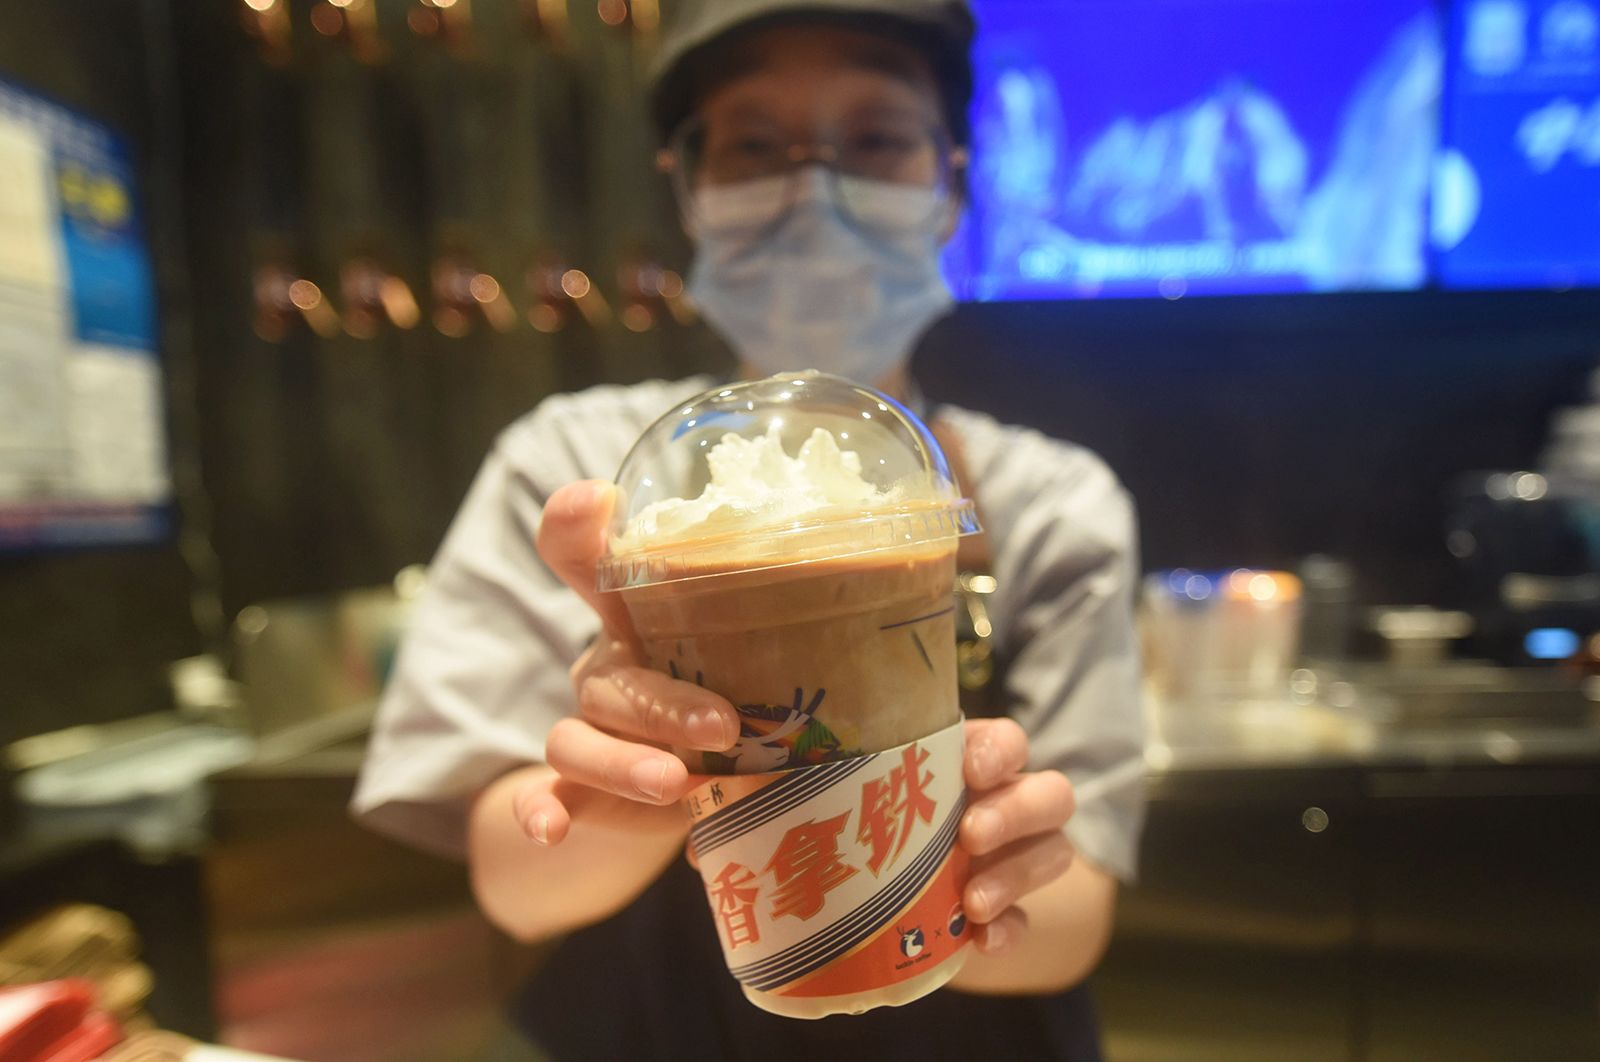 Các công ty cho biết nồng độ cồn của latte thấp hơn 0,5% thể tích. Luckin của Trung Quốc bán 5,4 triệu cốc latte pha cồn Moutai mỗi ngày Baijiu của Moutai là một loại rượu gây ngứa cổ họng thường chứa 53% cồn.Loại đồ uống mới nhanh chóng trở thành chủ đề nóng trên mạng xã hội Trung Quốc, khiến nhiều người dùng thắc mắc liệu nó có an toàn khi sử dụng khi đang di chuyển hay không. Câu hỏi “Uống cà phê Moutai đó chúng ta có thể lái ô tô được không?” là chủ đề số một trên mạng xã hội Weibo hôm thứ Hai, với 430 triệu lượt xem.